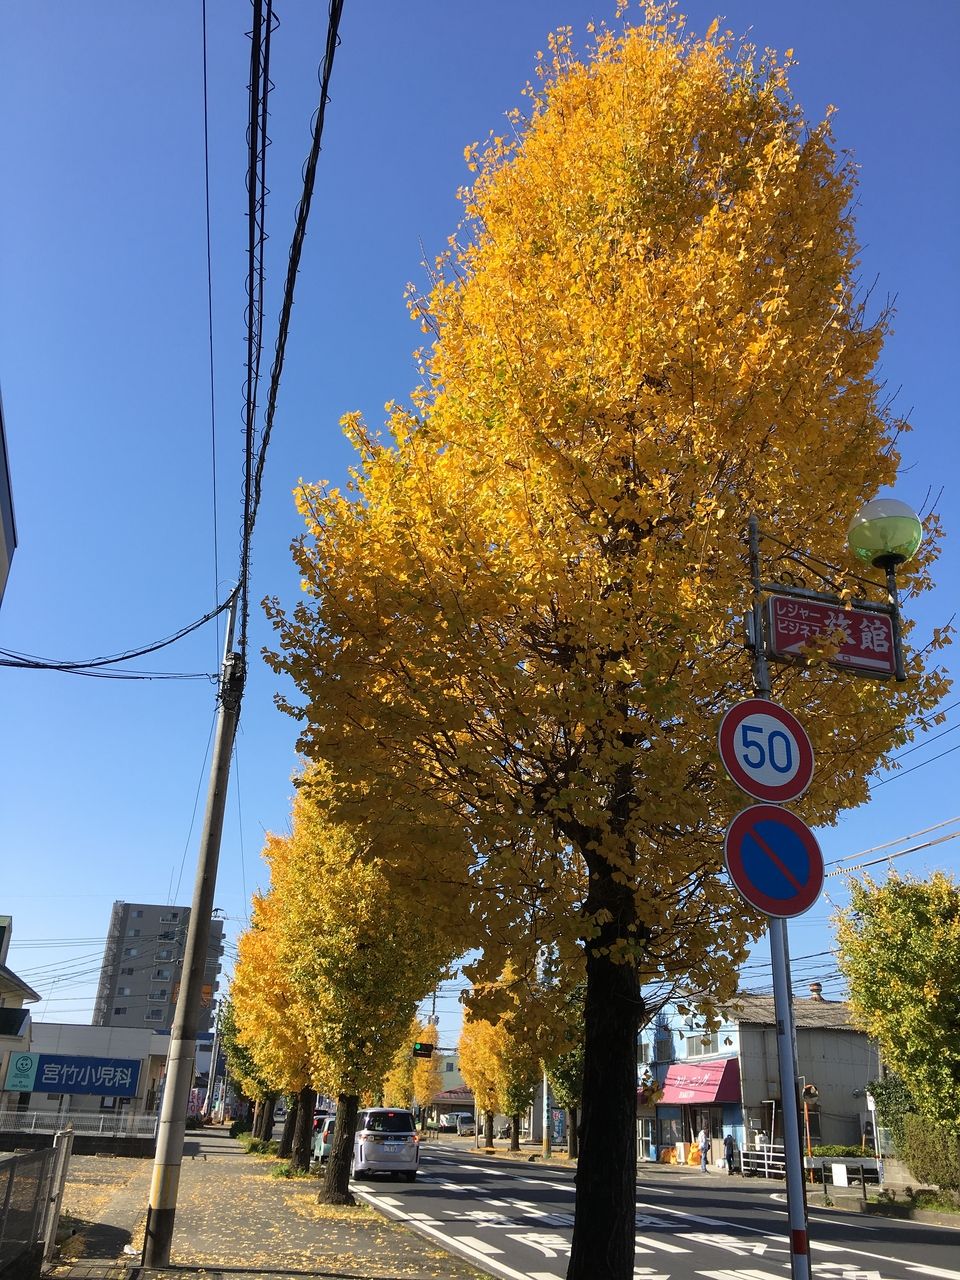 色ずく街路樹の銀杏